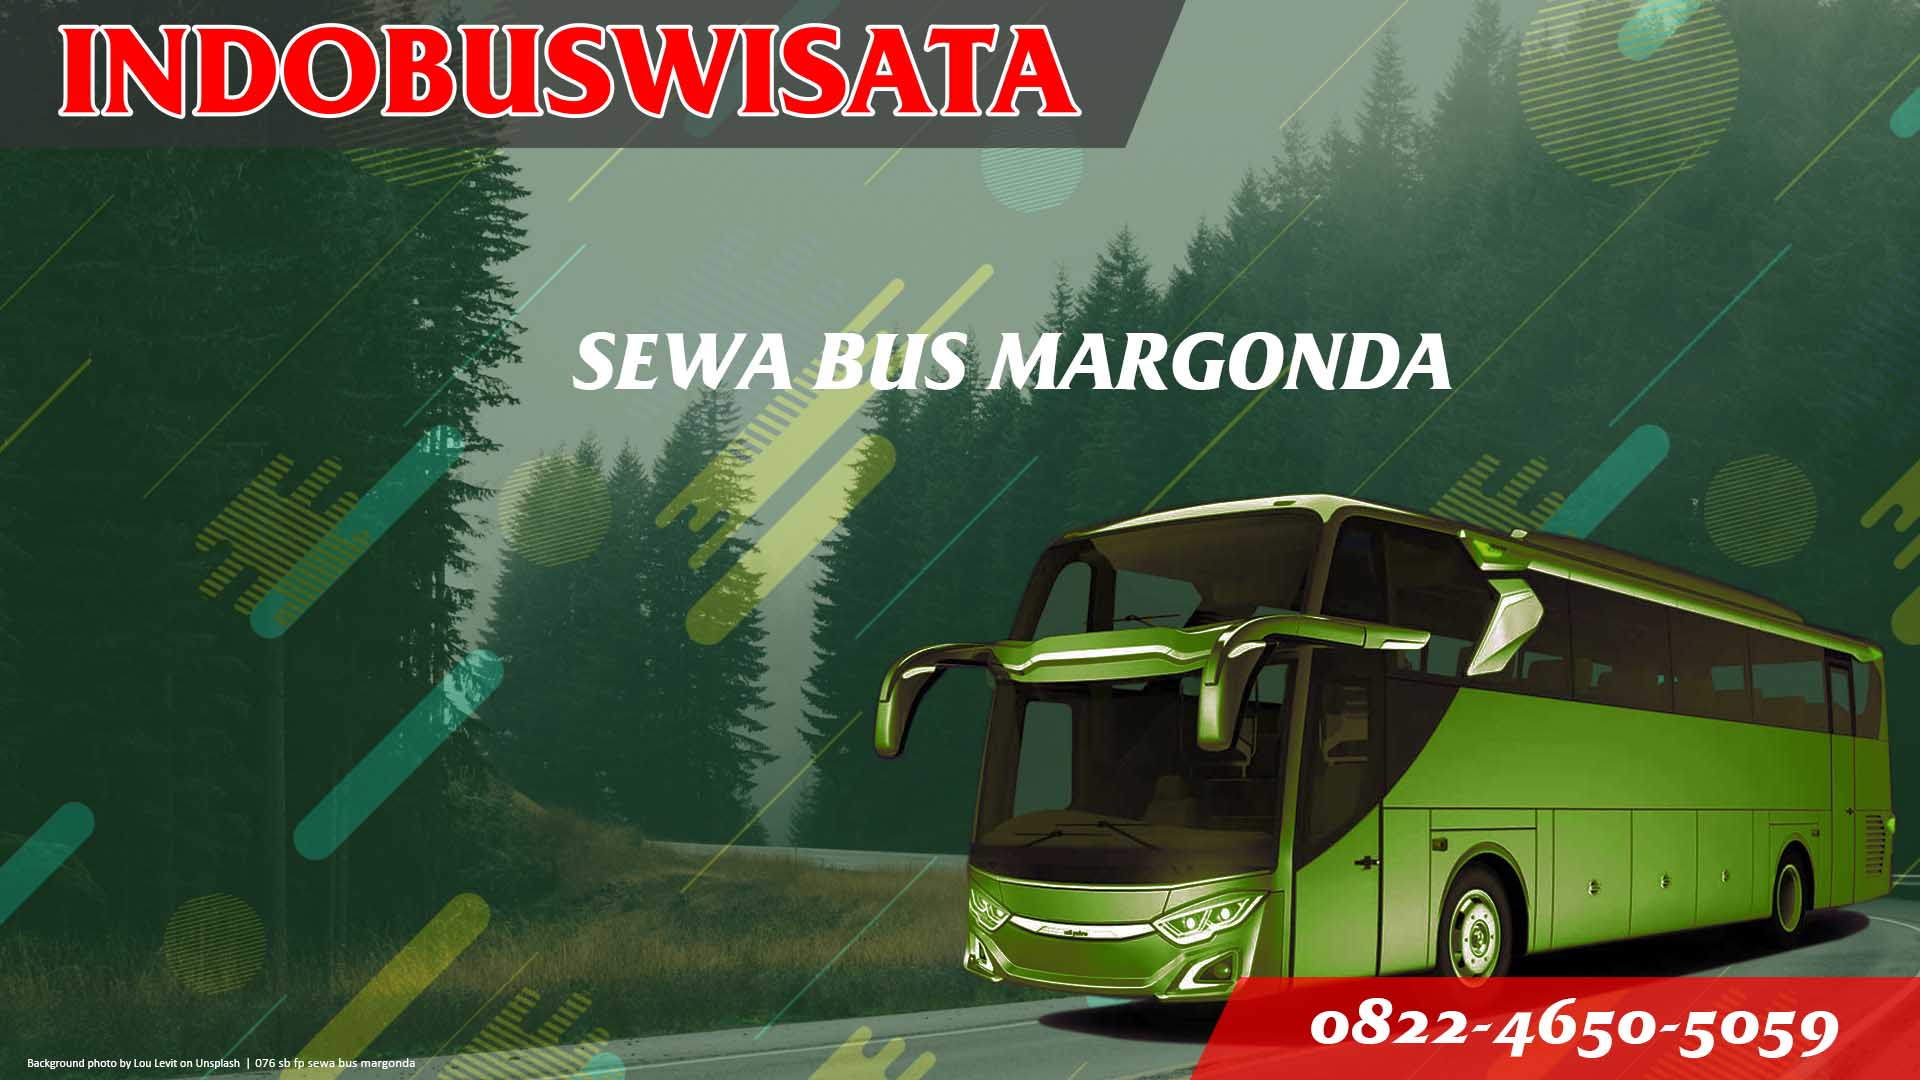 076 Sb Fp Sewa Bus Margonda Jb 3 Hdd Indobuswisata